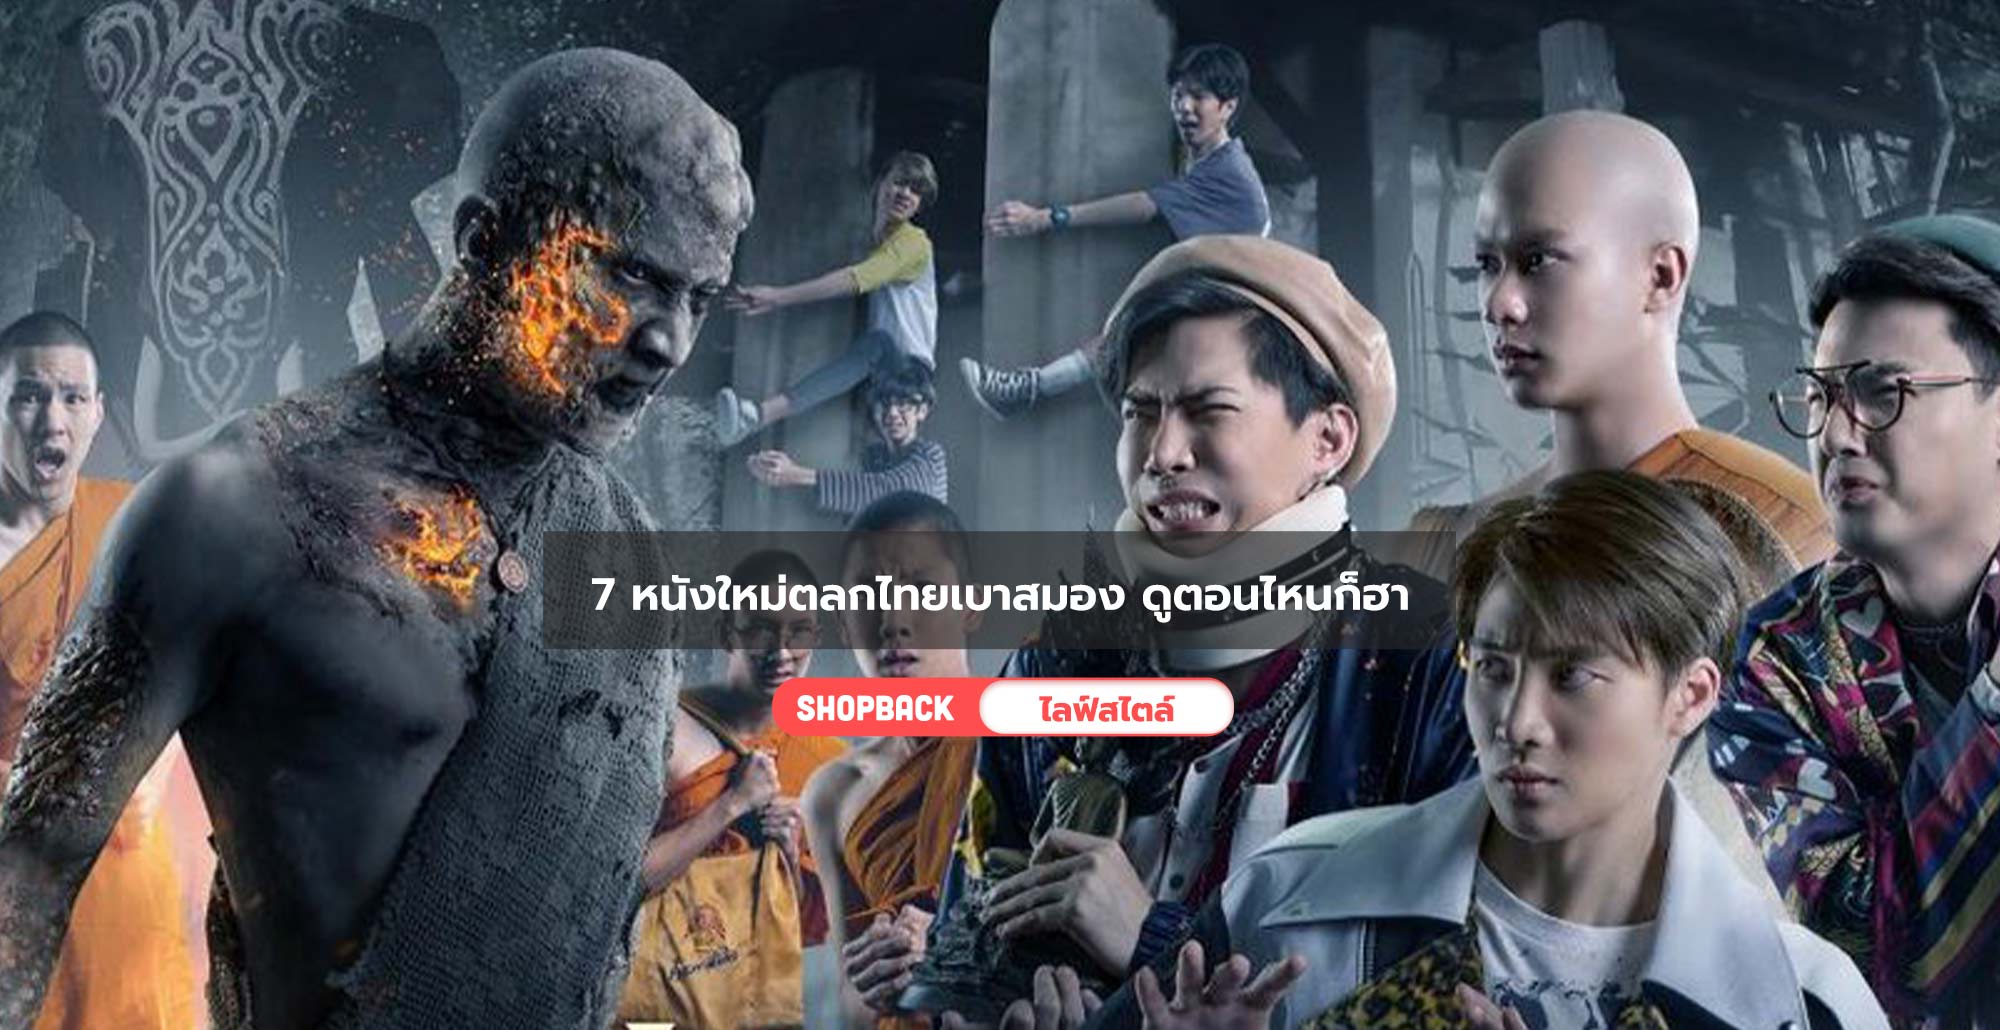 7 หนังใหม่ตลกไทยเบาสมอง ที่หยิบมาดูเมื่อไหร่ก็หายเครียด